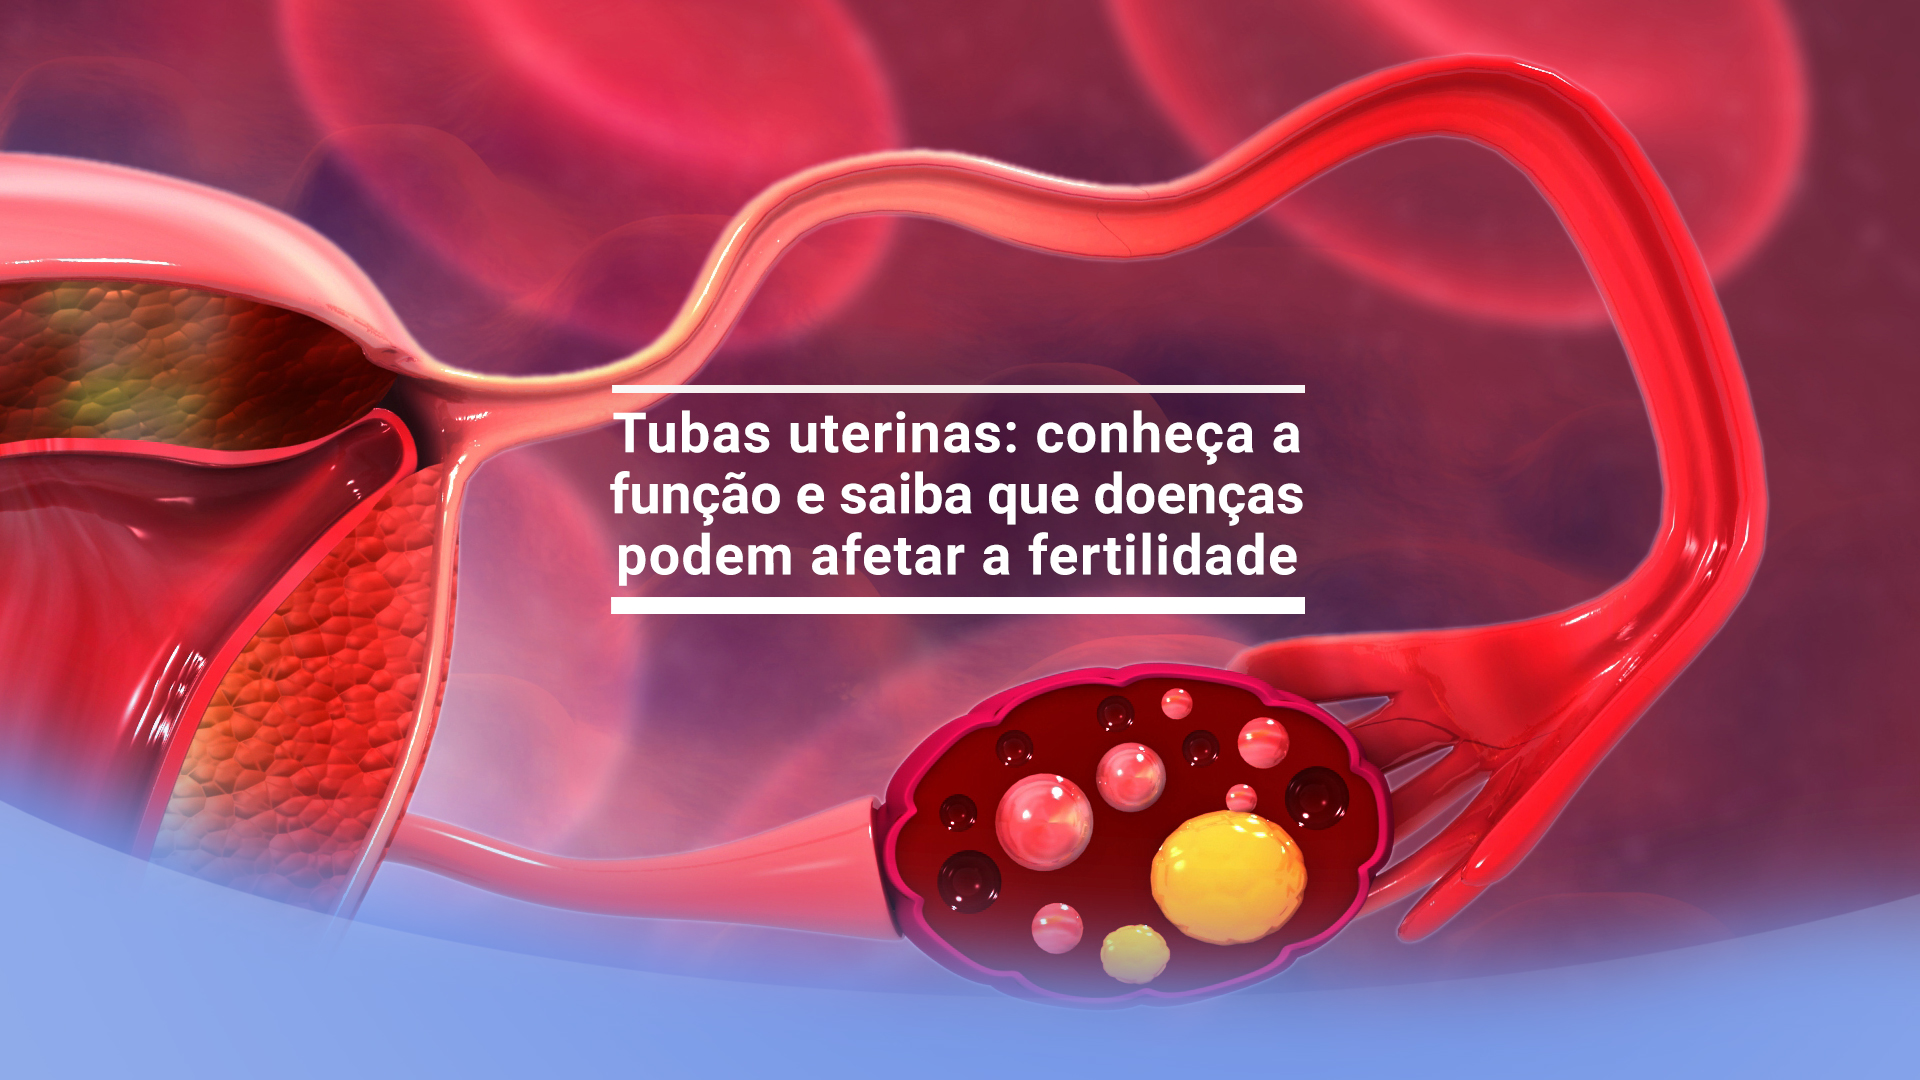 Tubas uterinas: conheça a função e saiba que doenças podem afetar a fertilidade